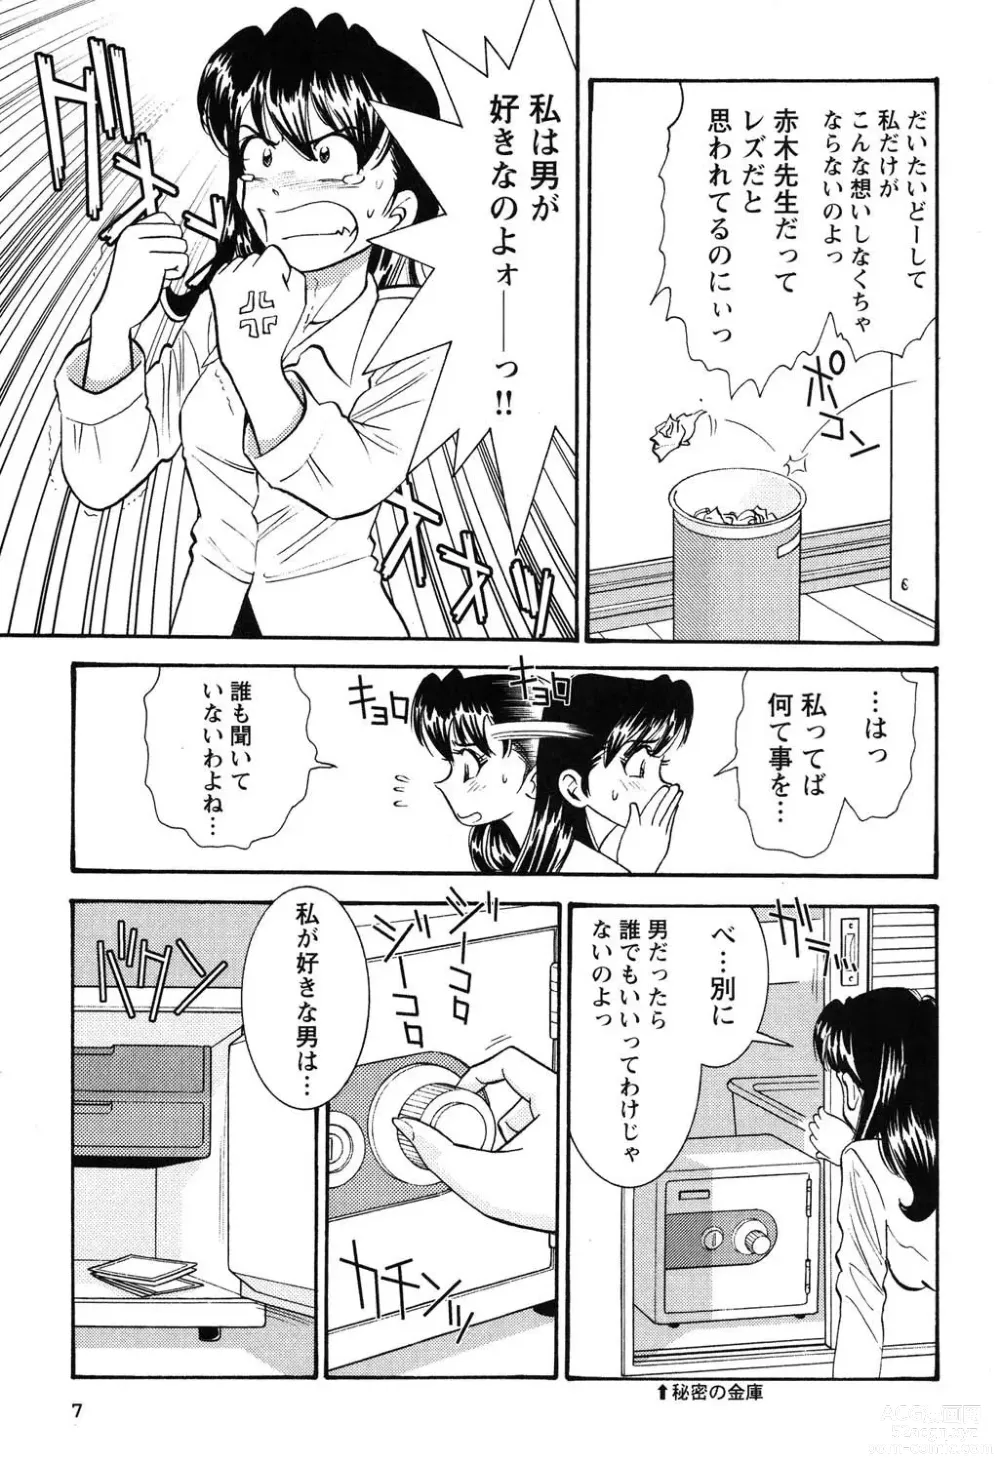 Page 8 of manga Bambina Oiroke  Battle  Hen